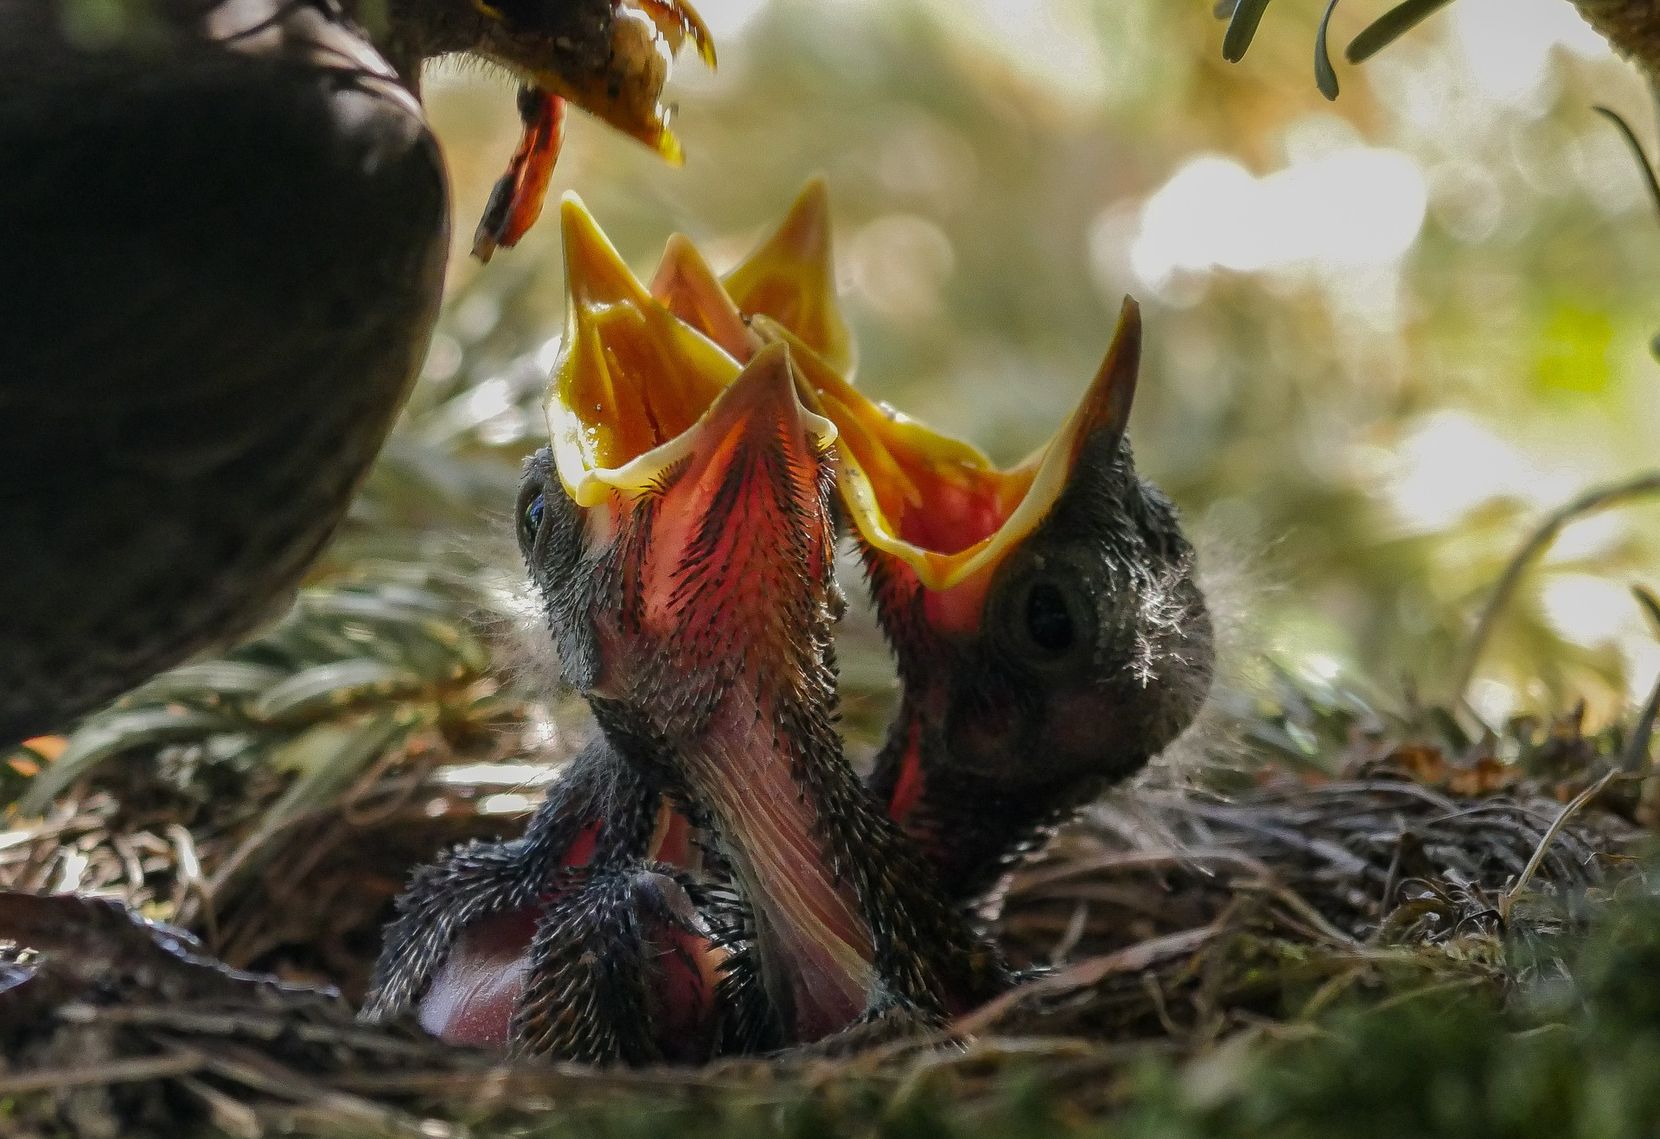 Jungvögel sitzen mit weit aufgerissenem Schnabel im Nest und werden gerade von einem erwachsenen Vogel gefüttert.